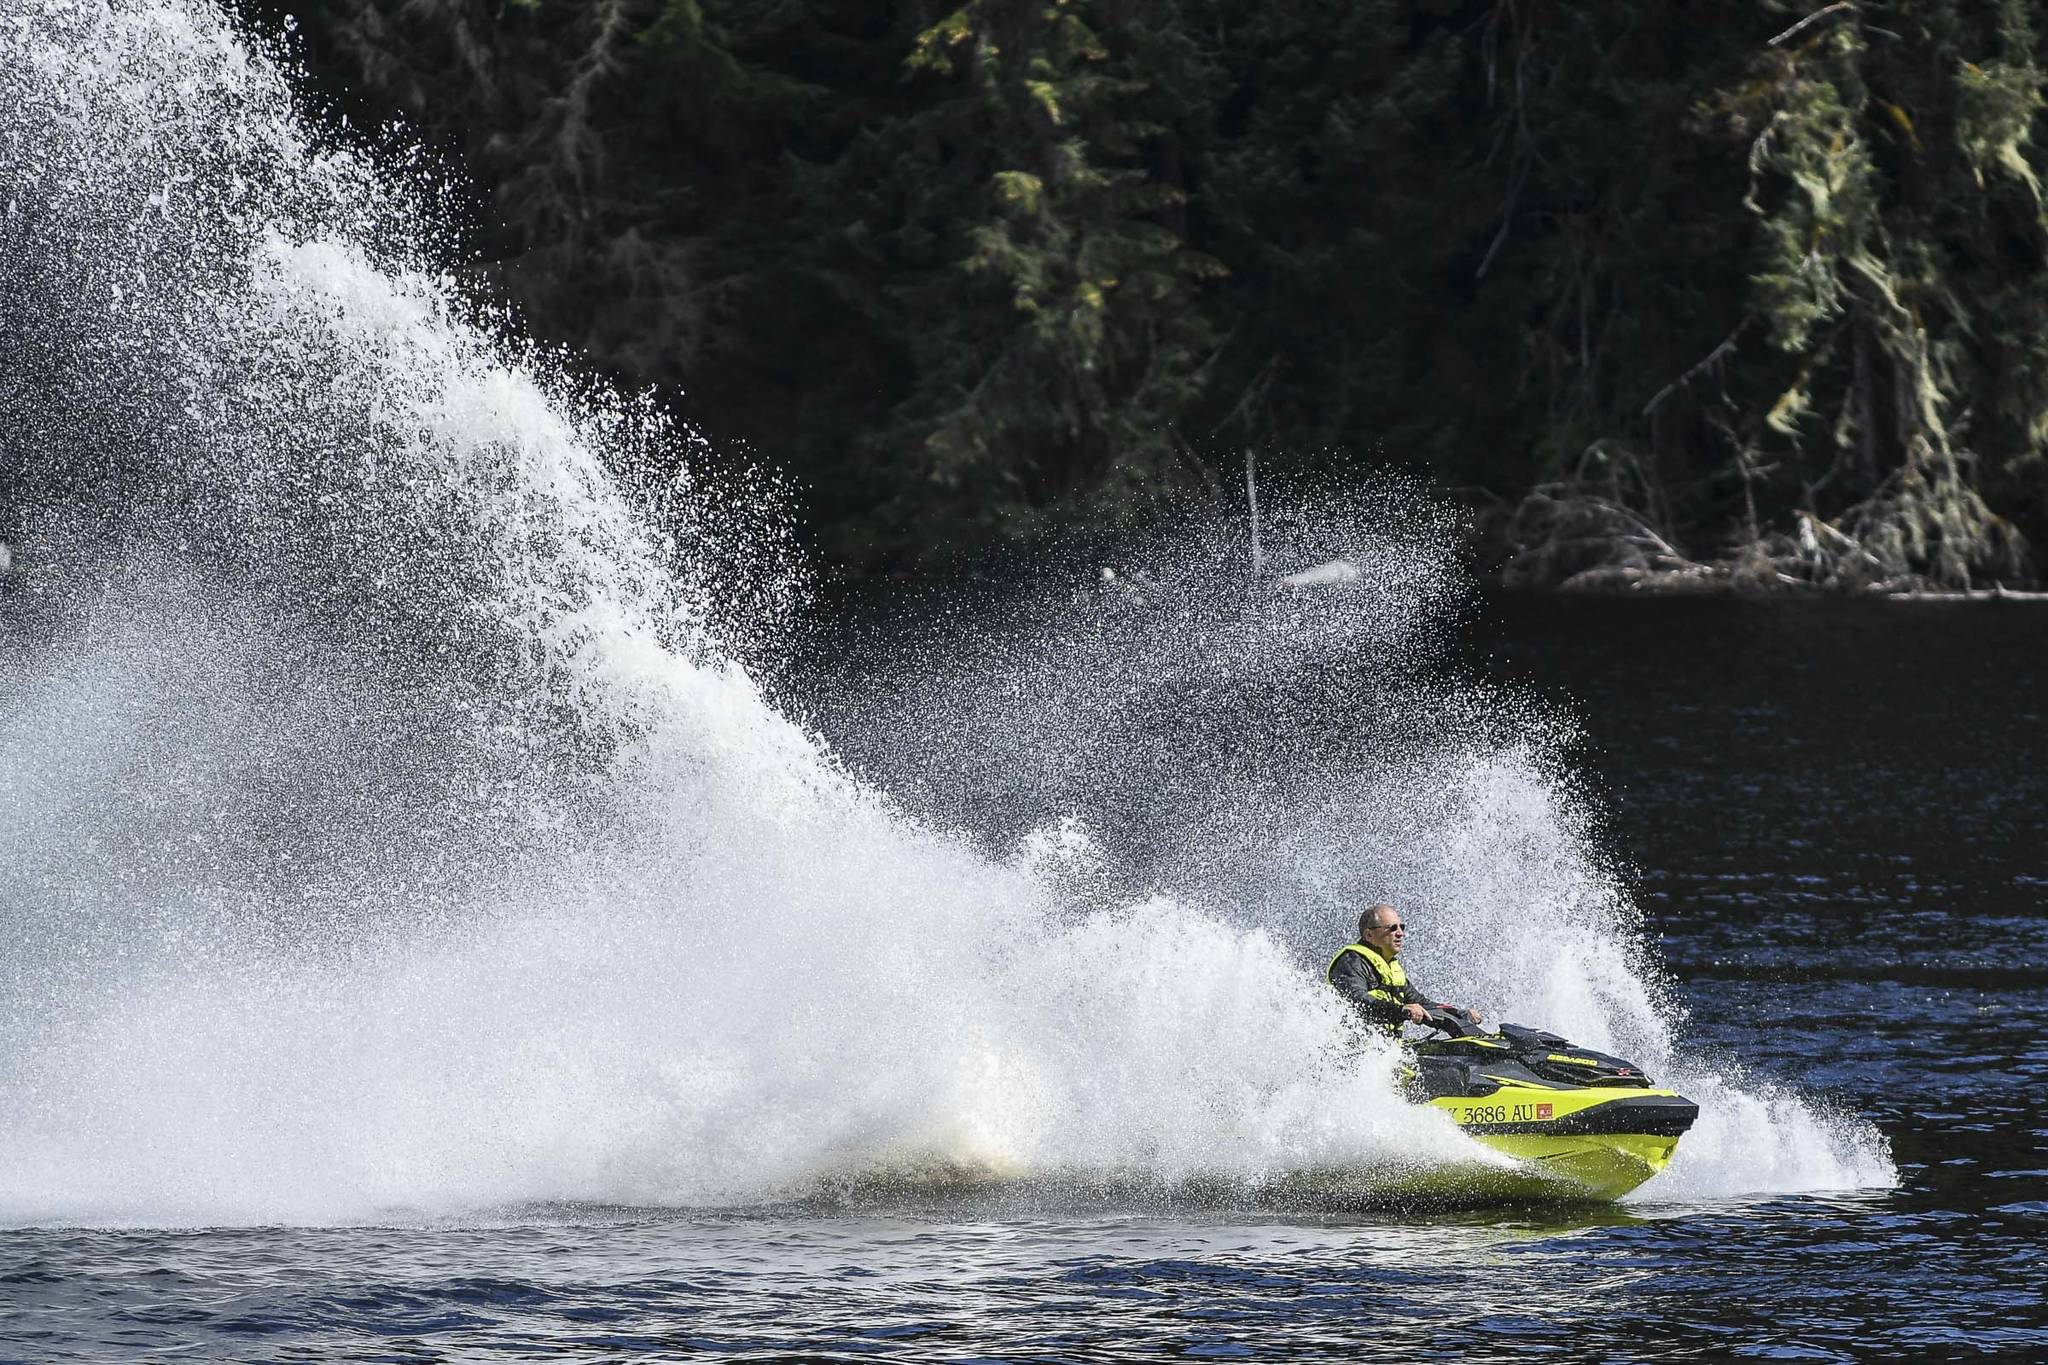 Terry Allen rides his jet ski at Auke Lake on Monday, Aug. 19, 2019. (Michael Penn | Juneau Empire)